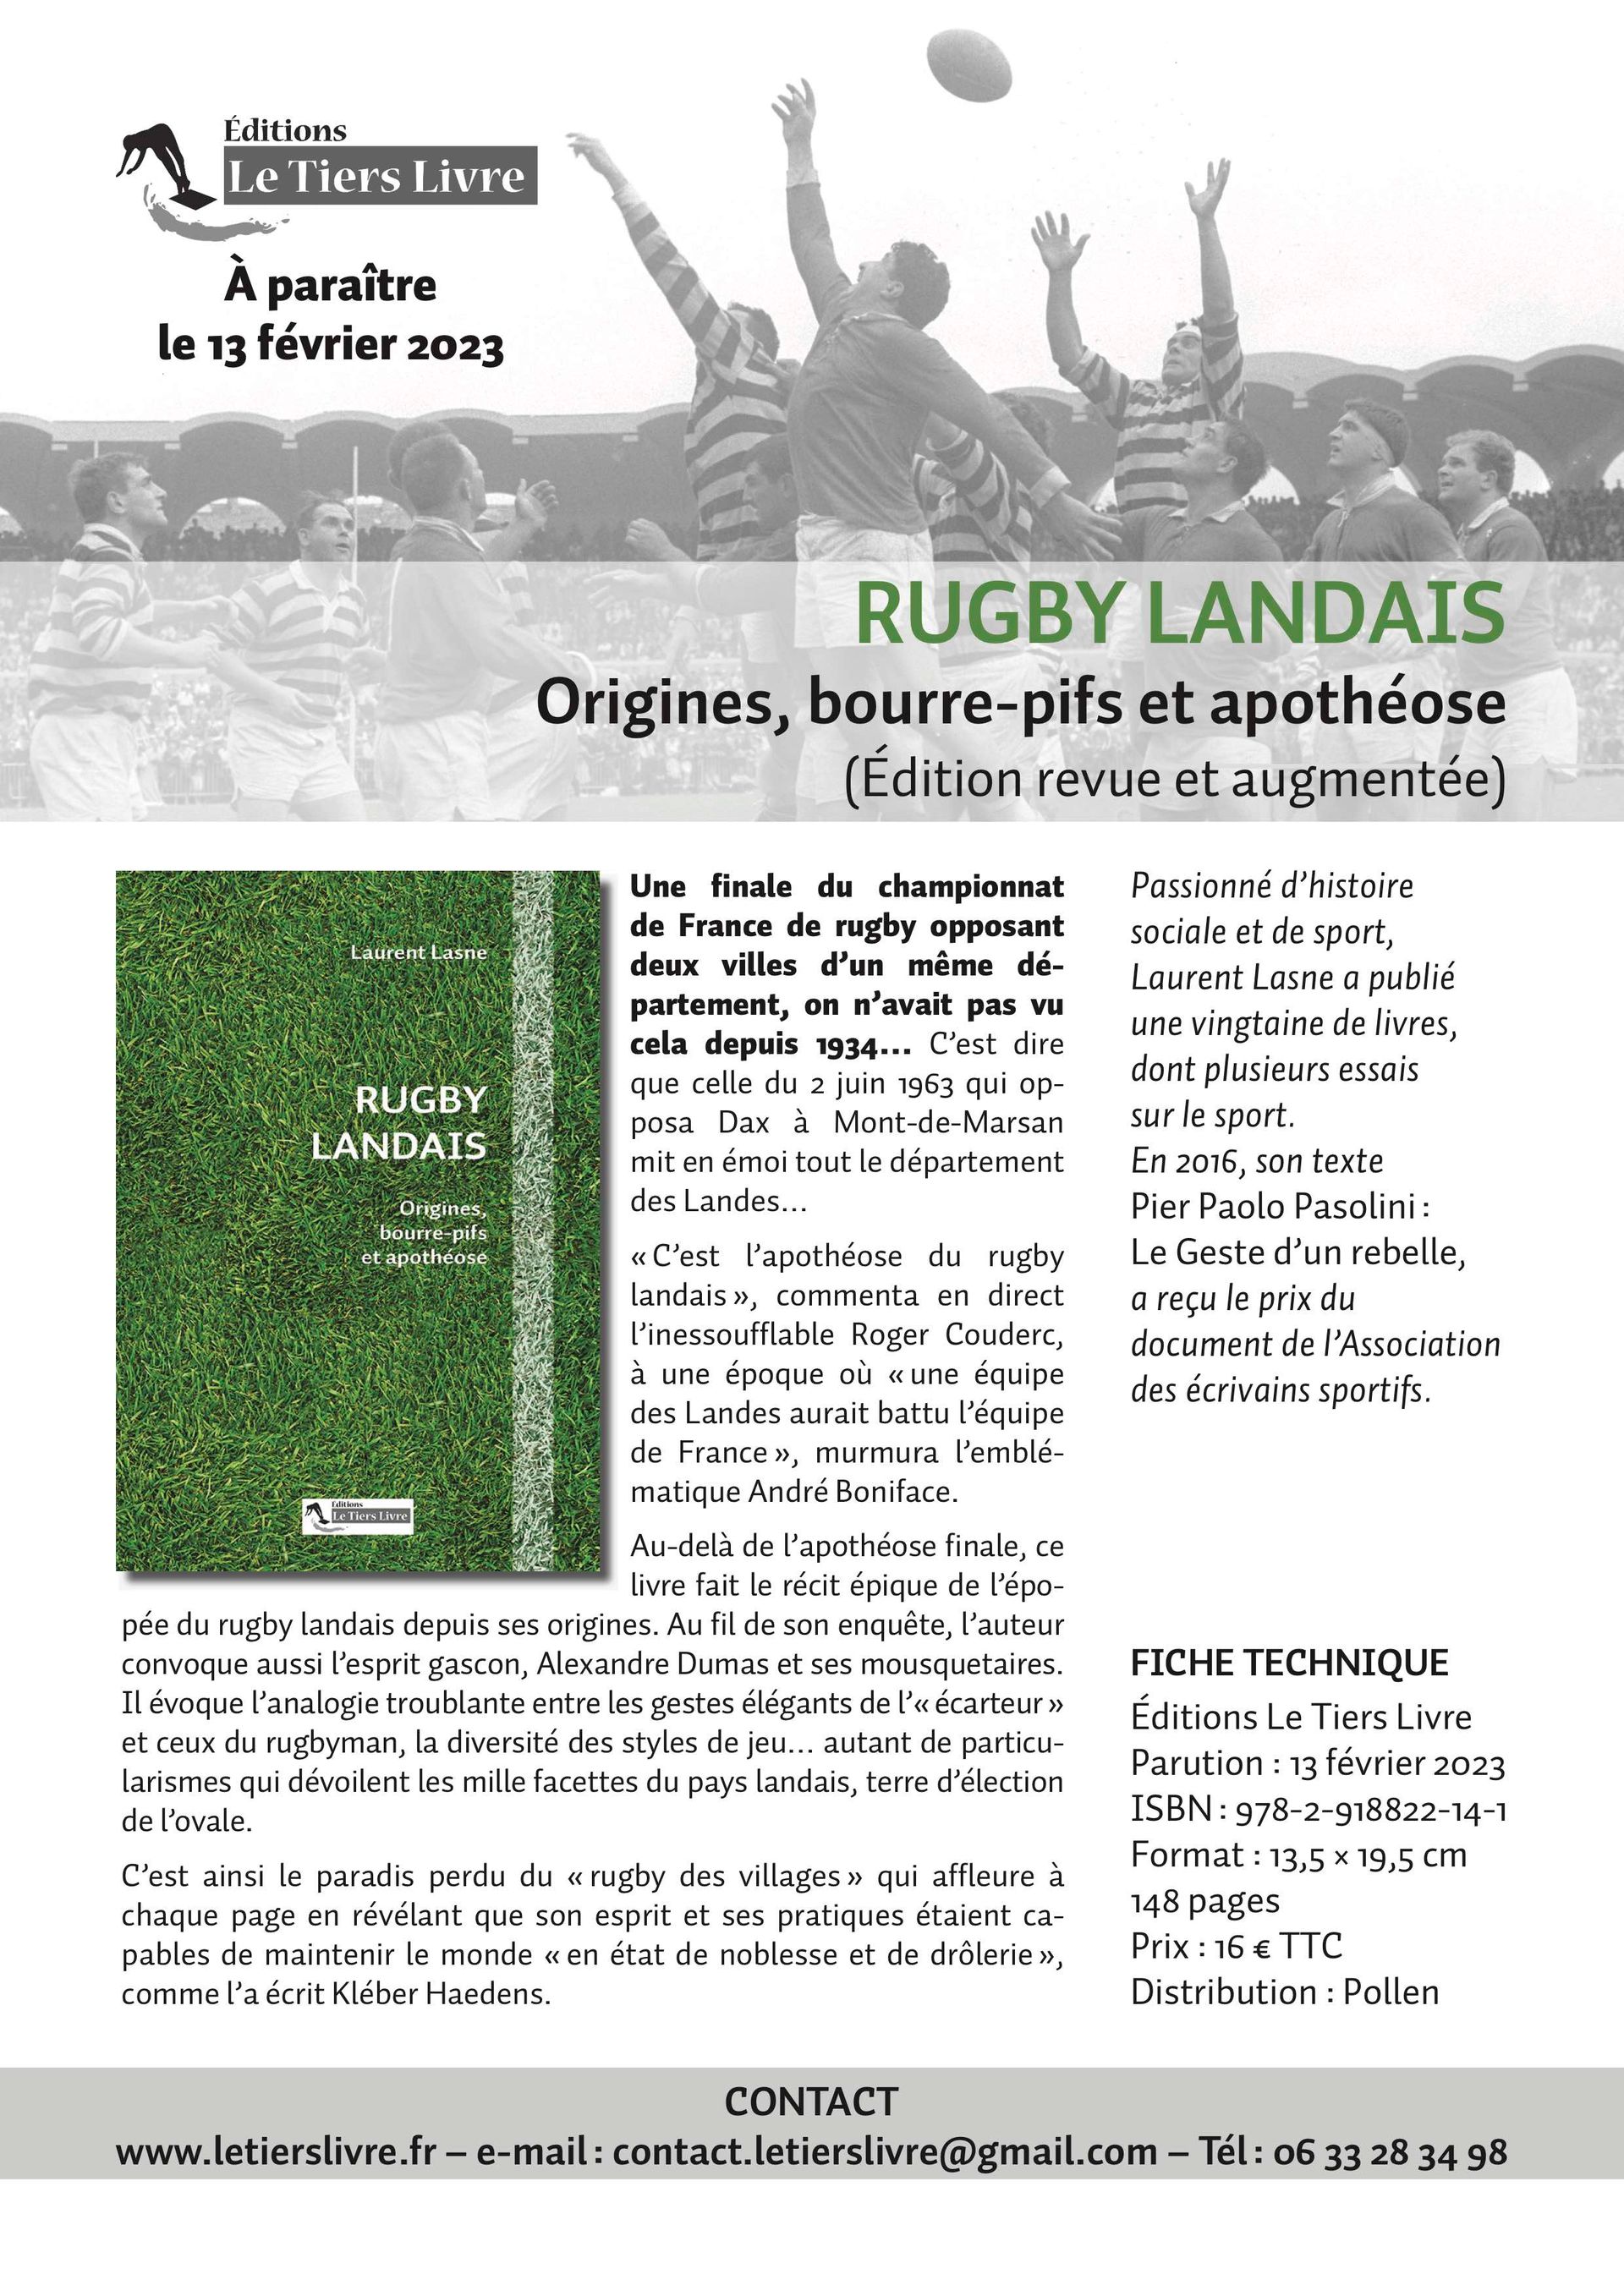 Rugby landais - Laurent Lasne